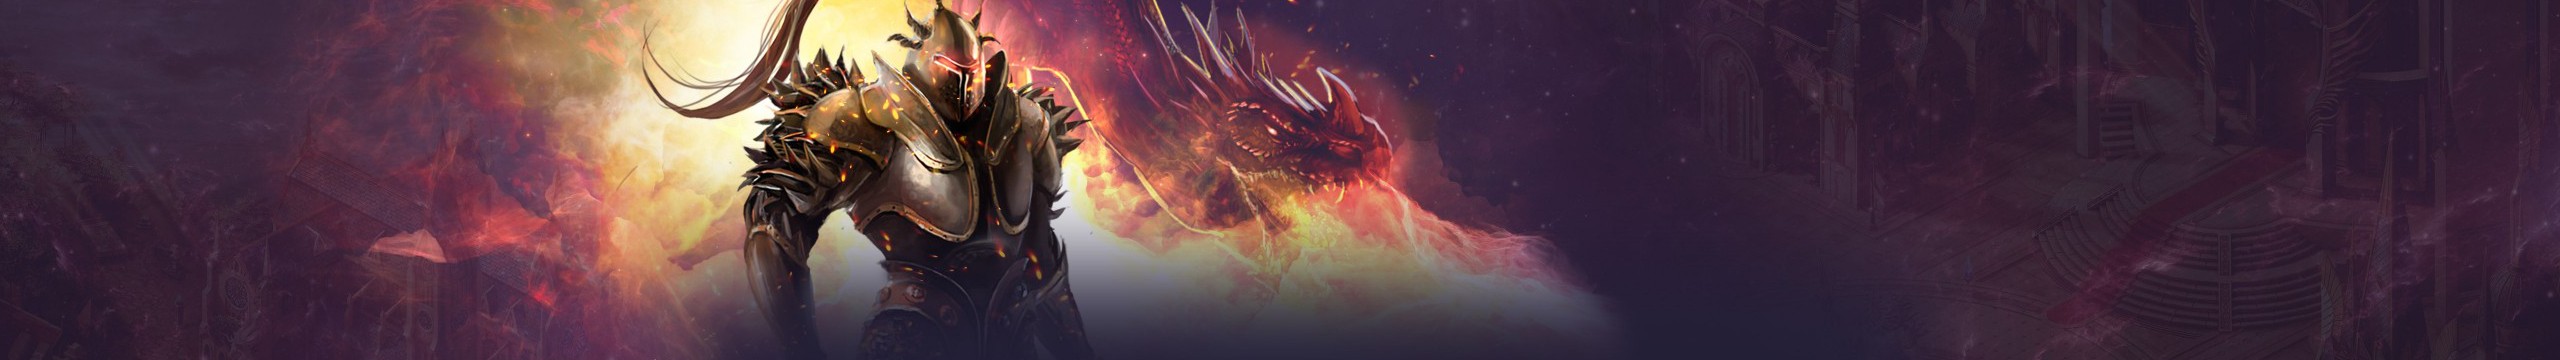 download free blood dragon